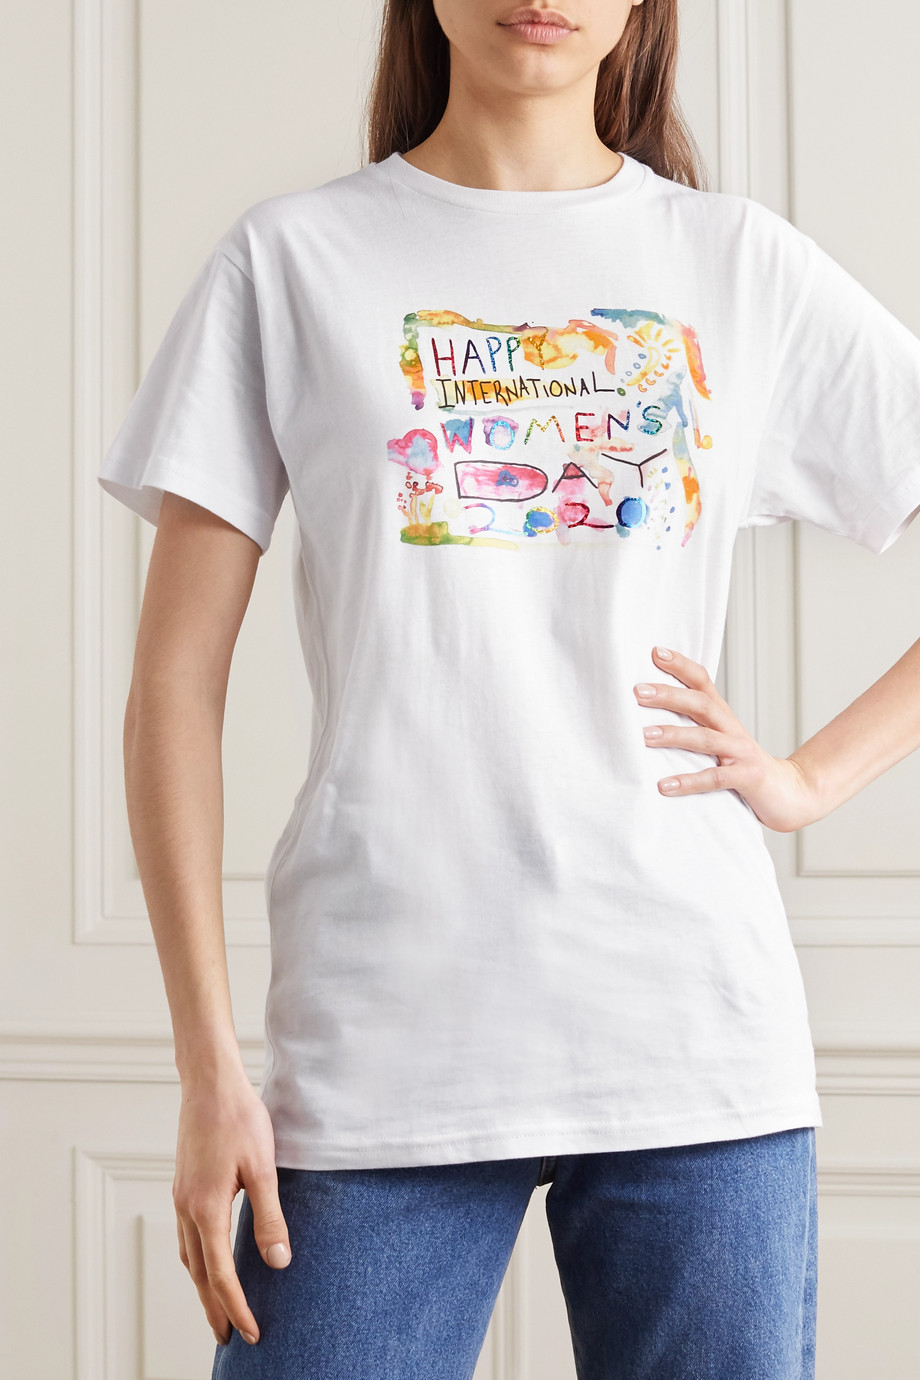 Net-a-Porter x Rosie Assoulin International Women's Day T-shirt 2020.